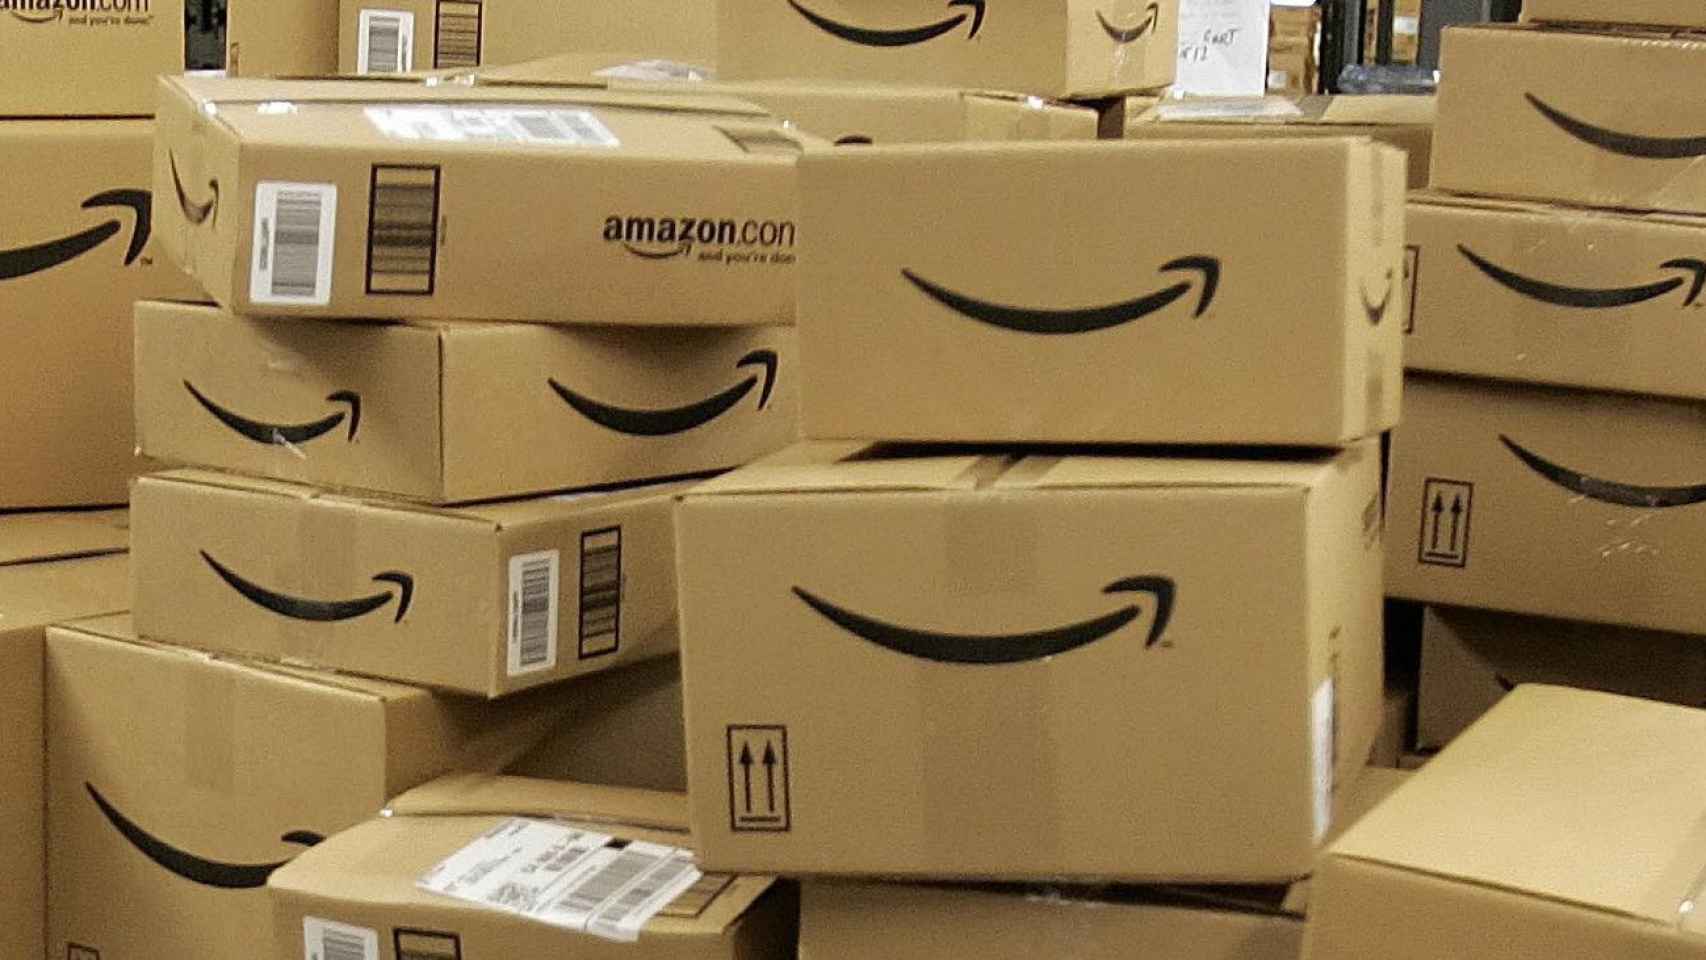 Paquetes de Amazon, una de las compañías que ha dejado de operar en una zona conflictiva de Barcelona por la inseguridad